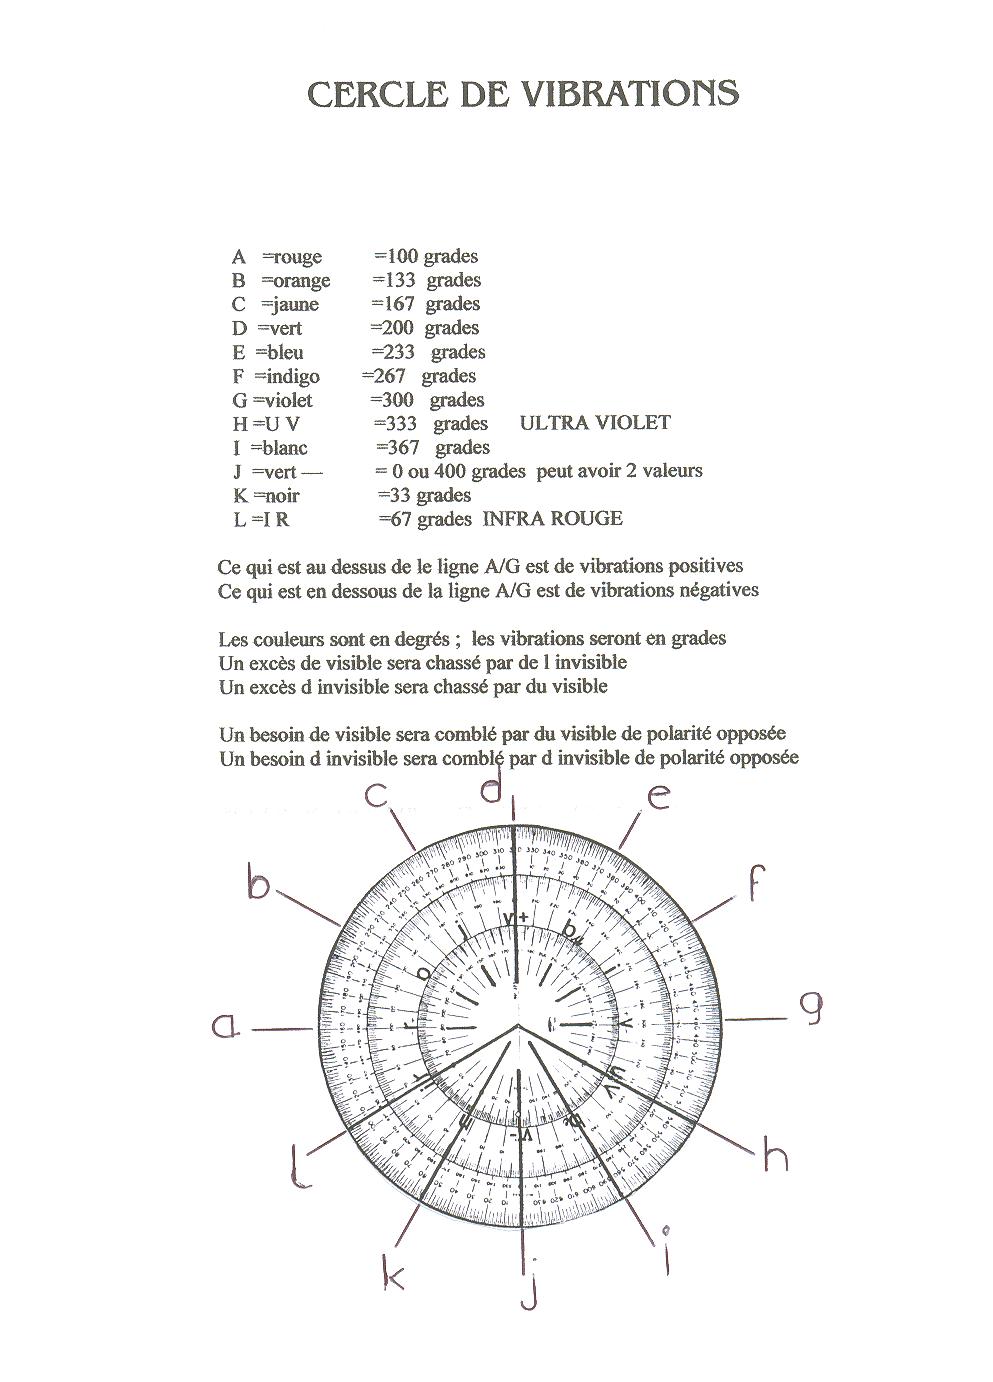 Etude des cercles : le cercle des vibrations